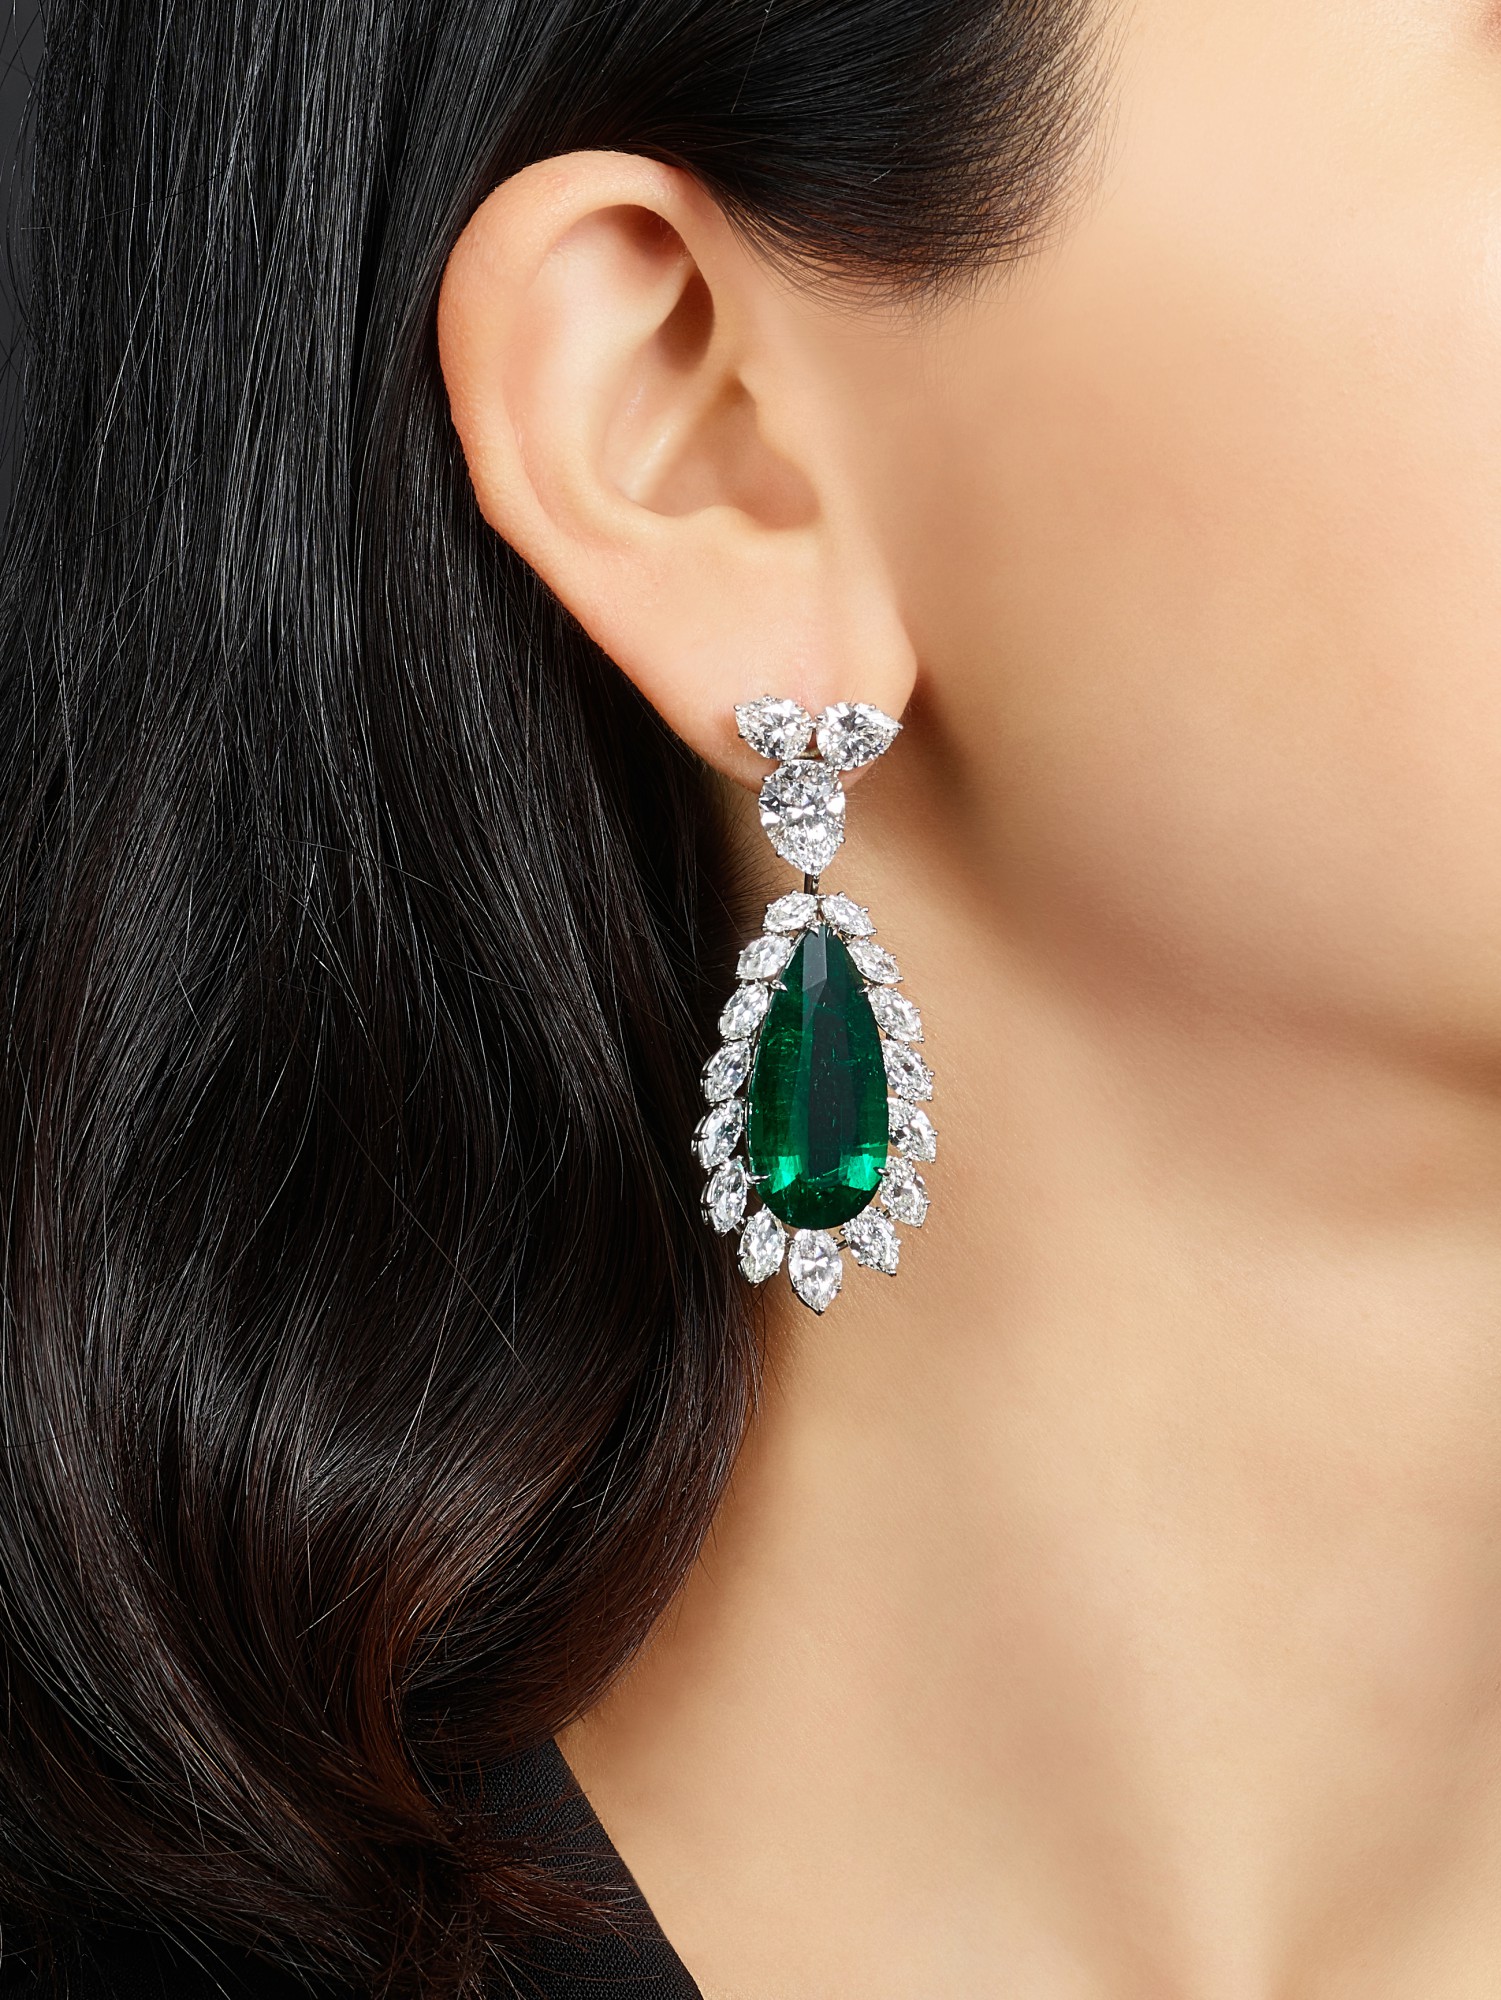 earrings海瑞温斯顿2027及1869卡拉哥伦比亚祖母绿配钻石吊耳环一对